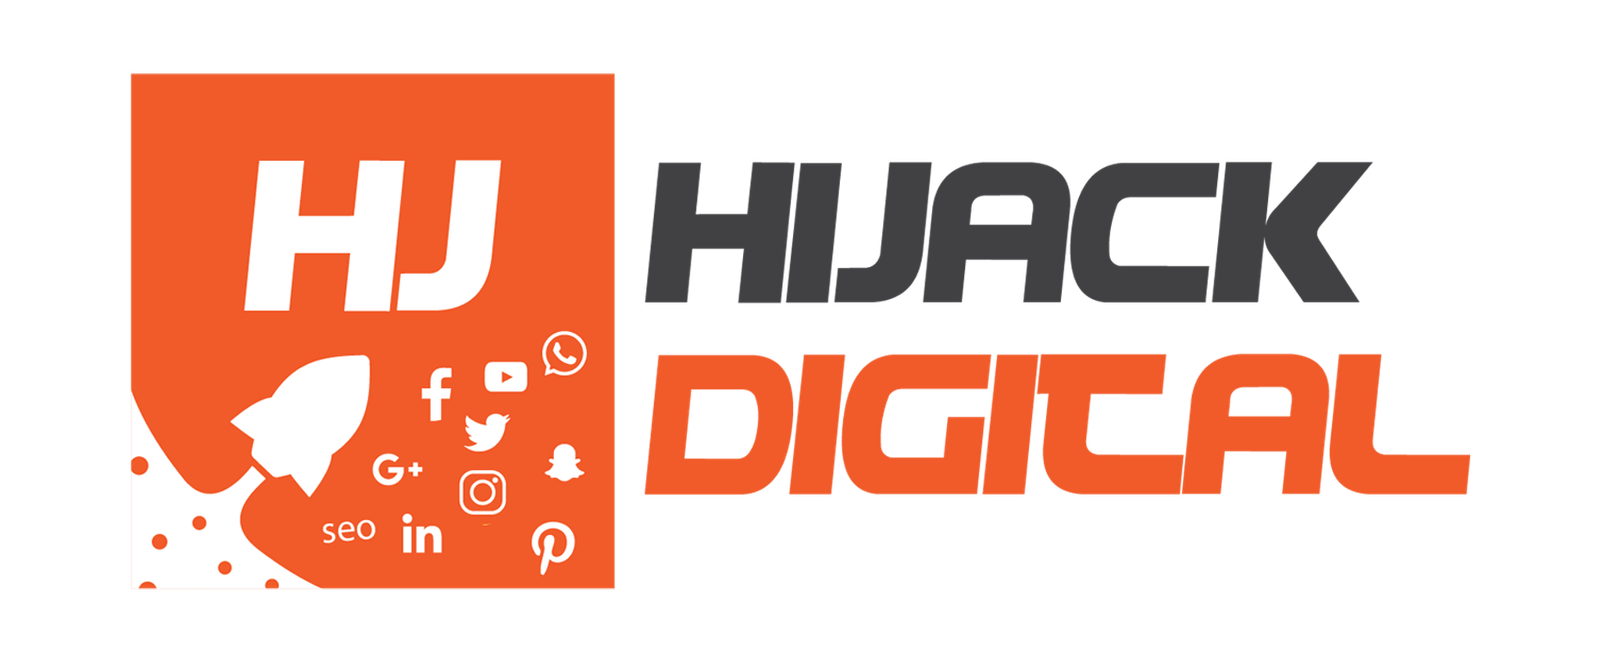 Hijack Digital